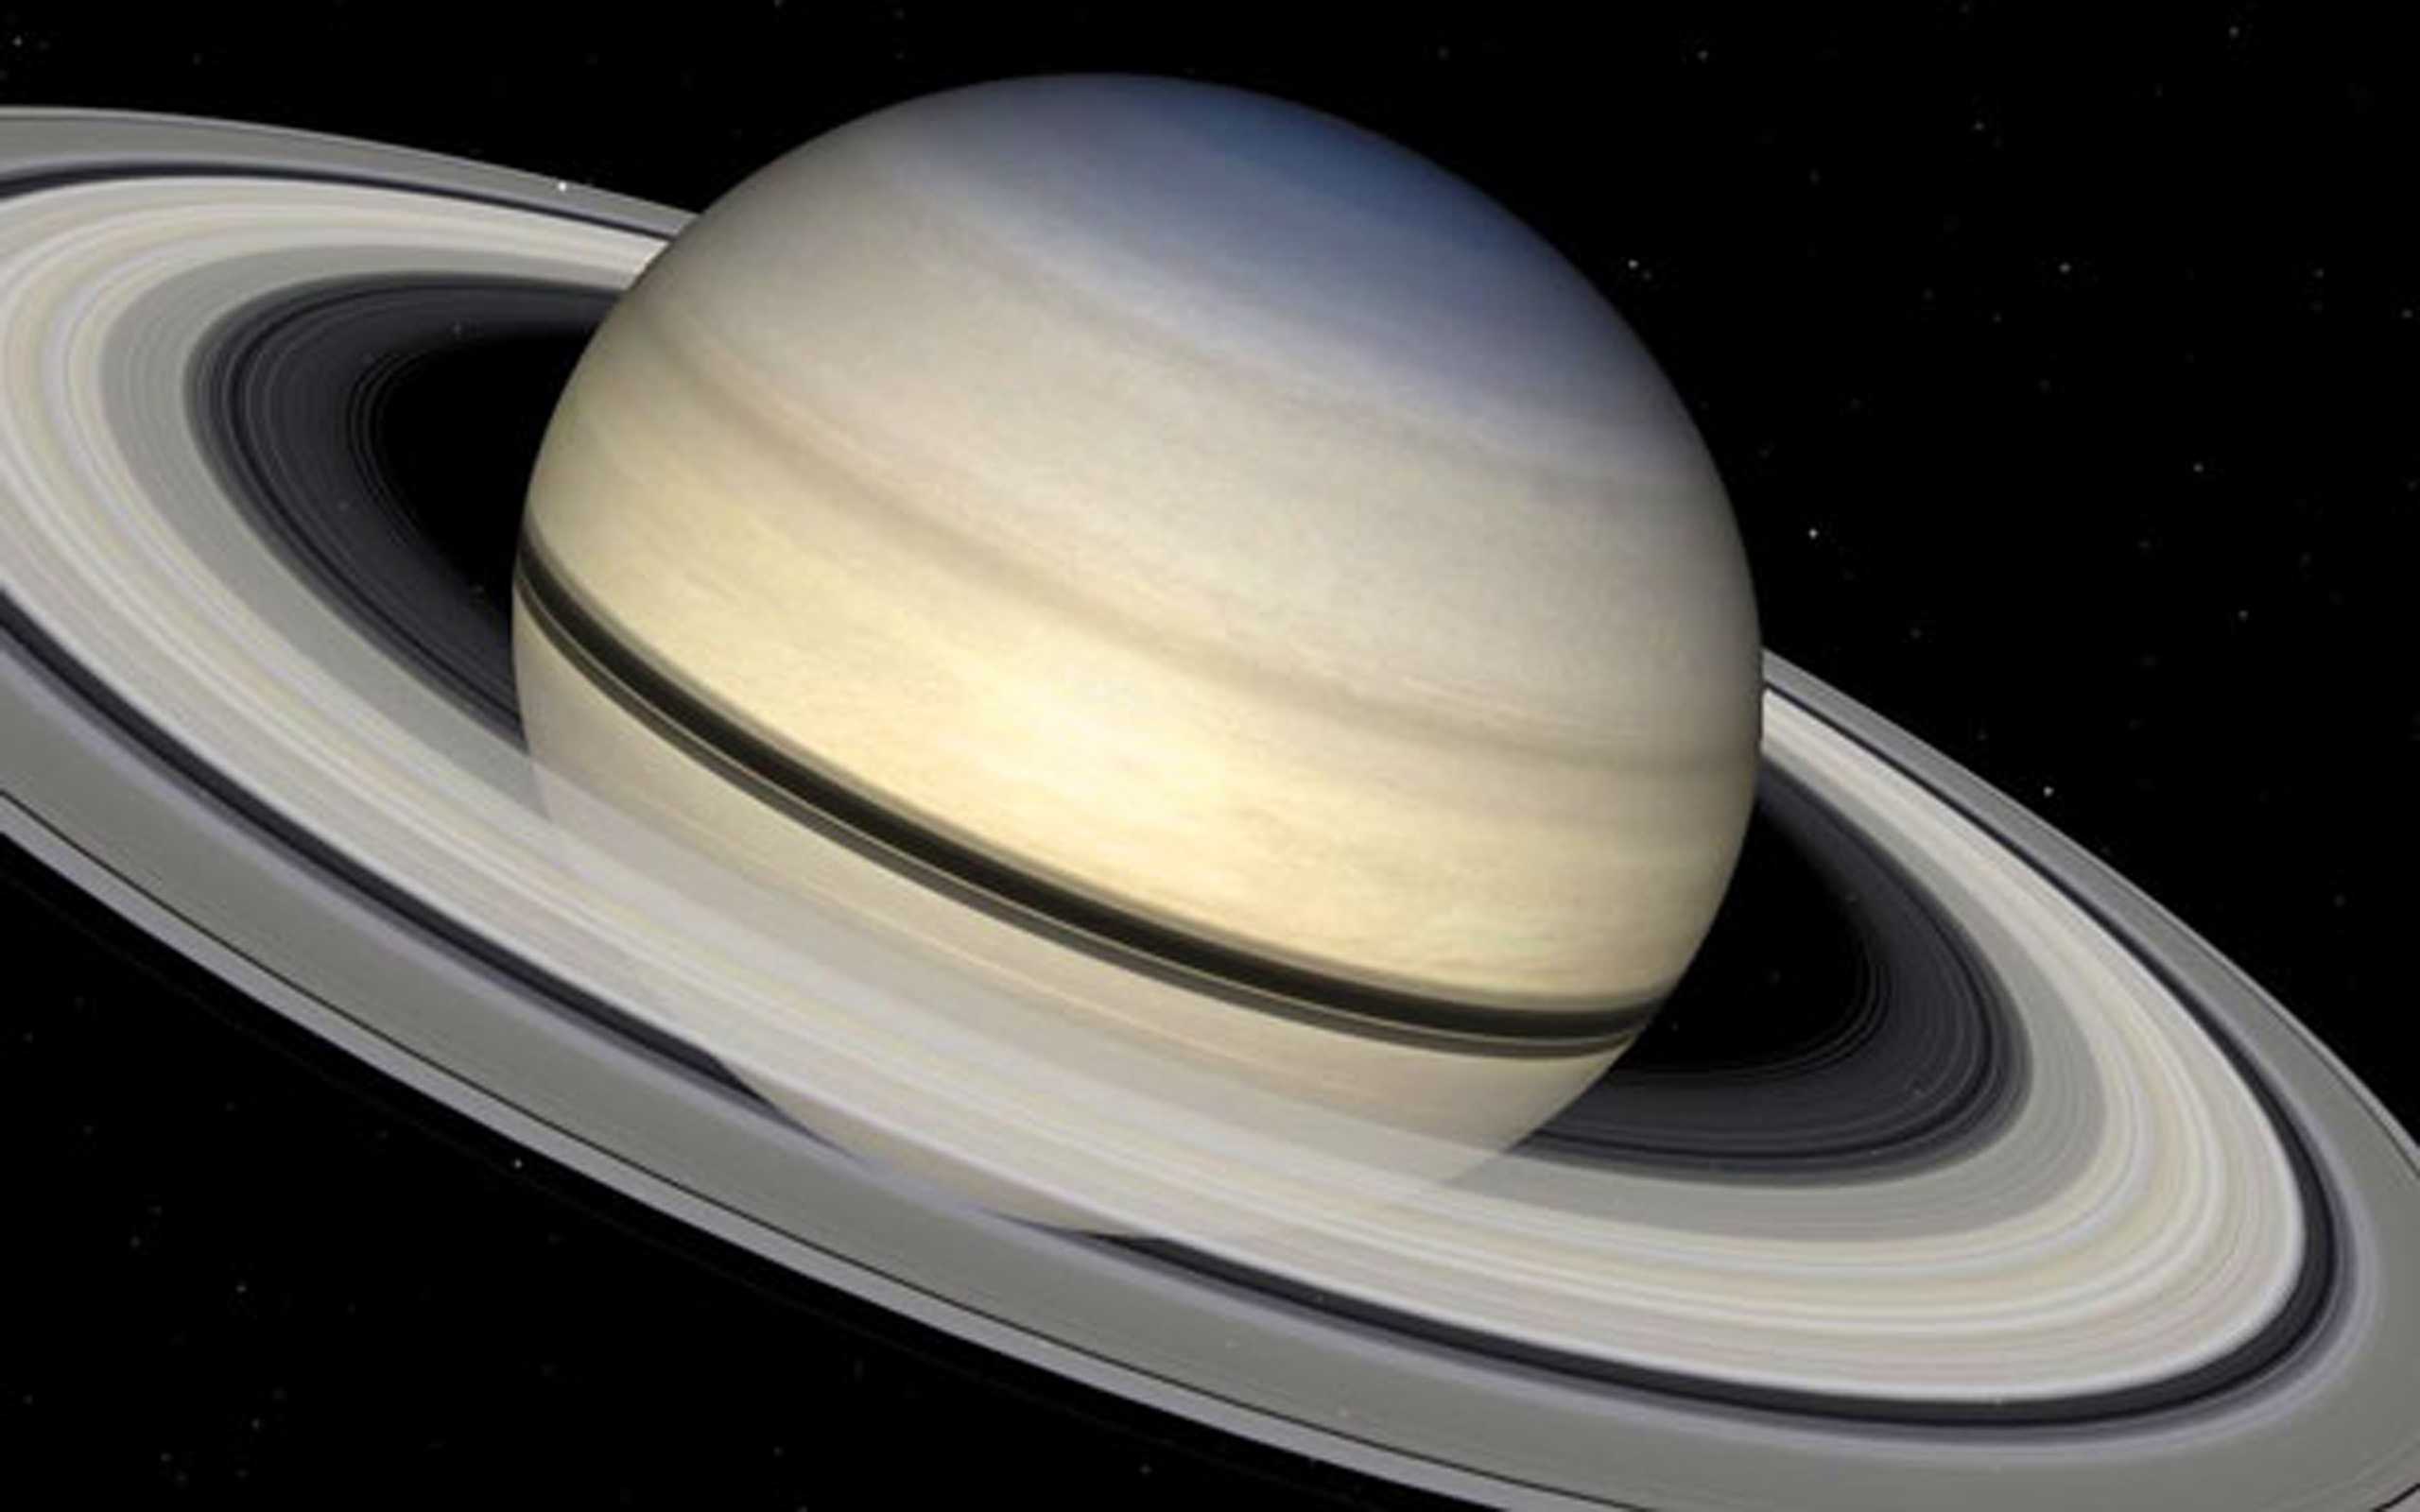 Сатурн с кольцами